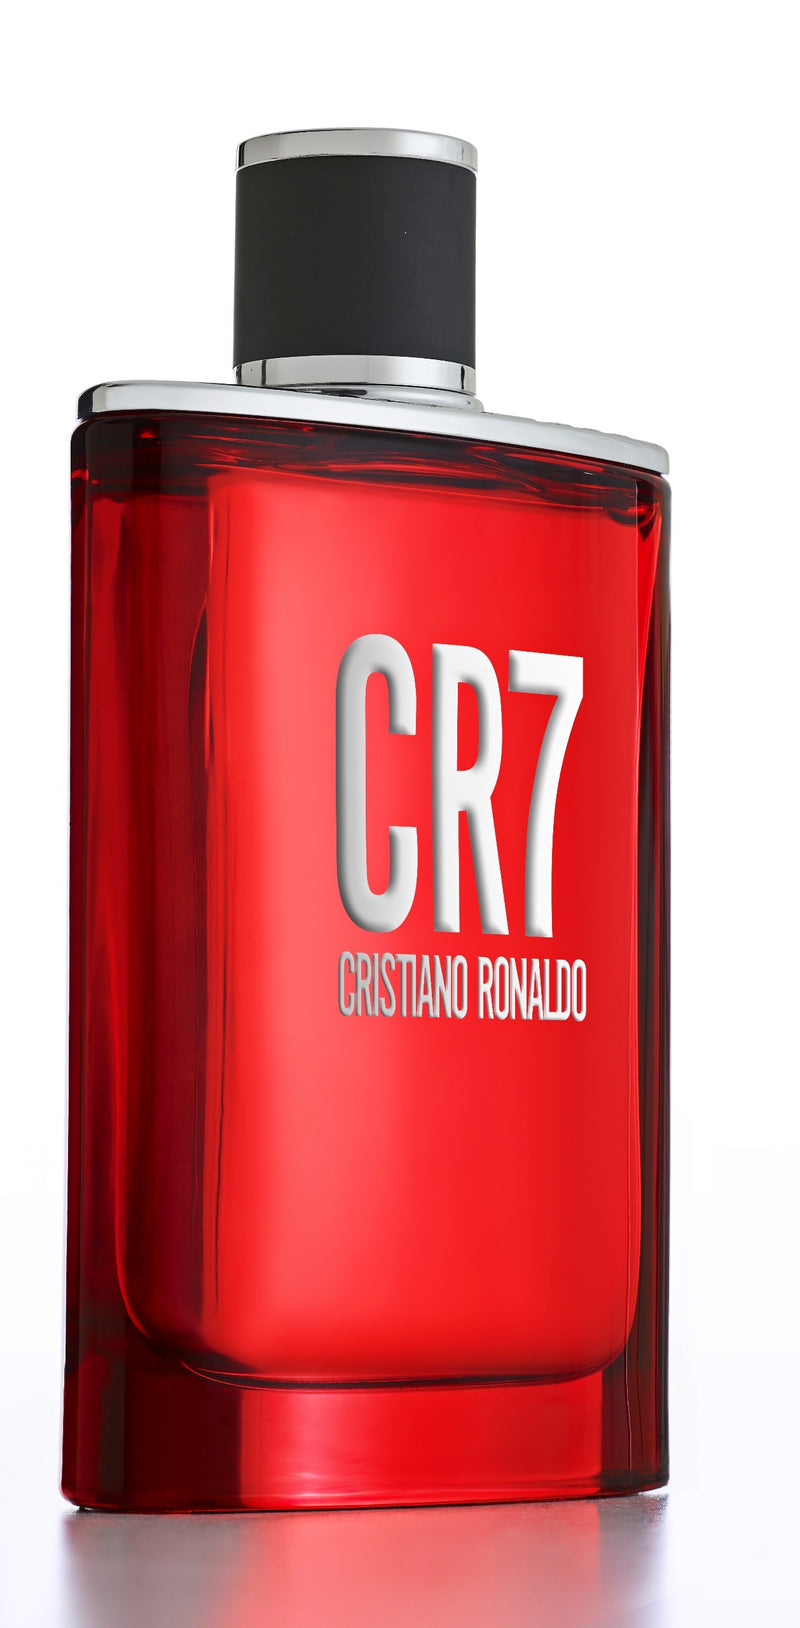 CR7 CRISTIANO RONALDO - EAU DE TOILETTE - 1oz. BRAND NEW IN FACTORY SEALED  BOX